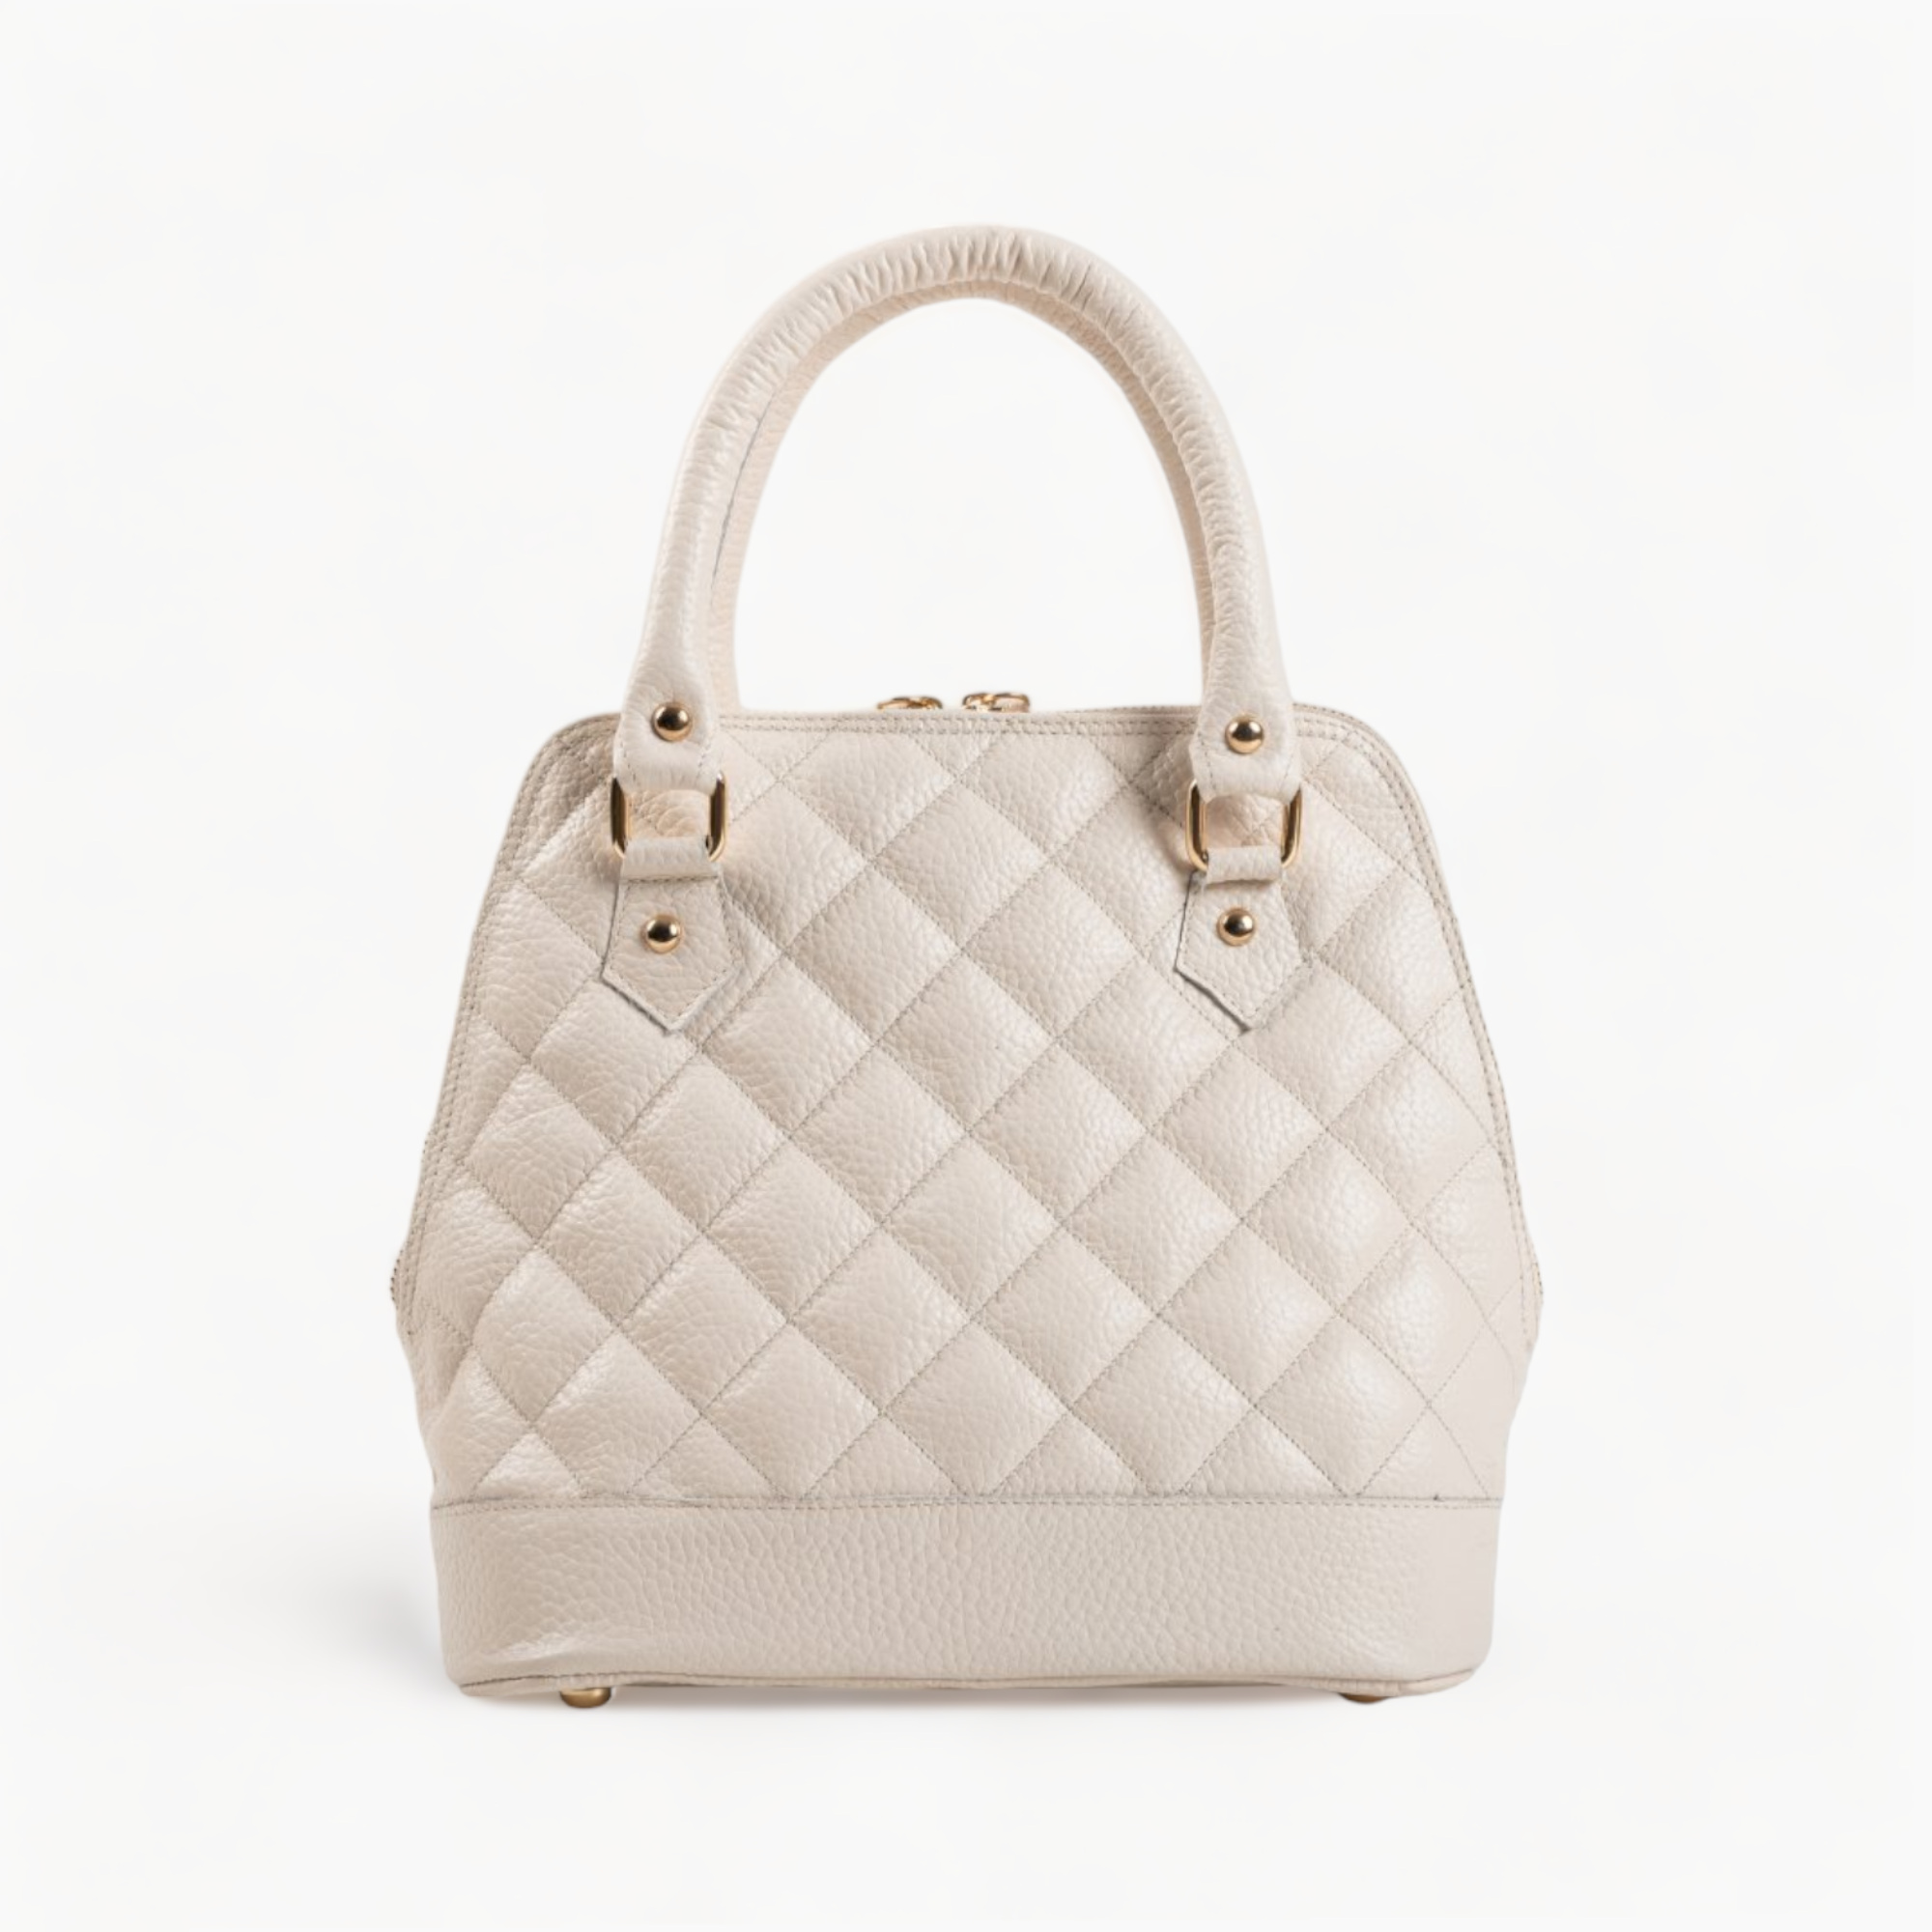 Leather handbag in beige color